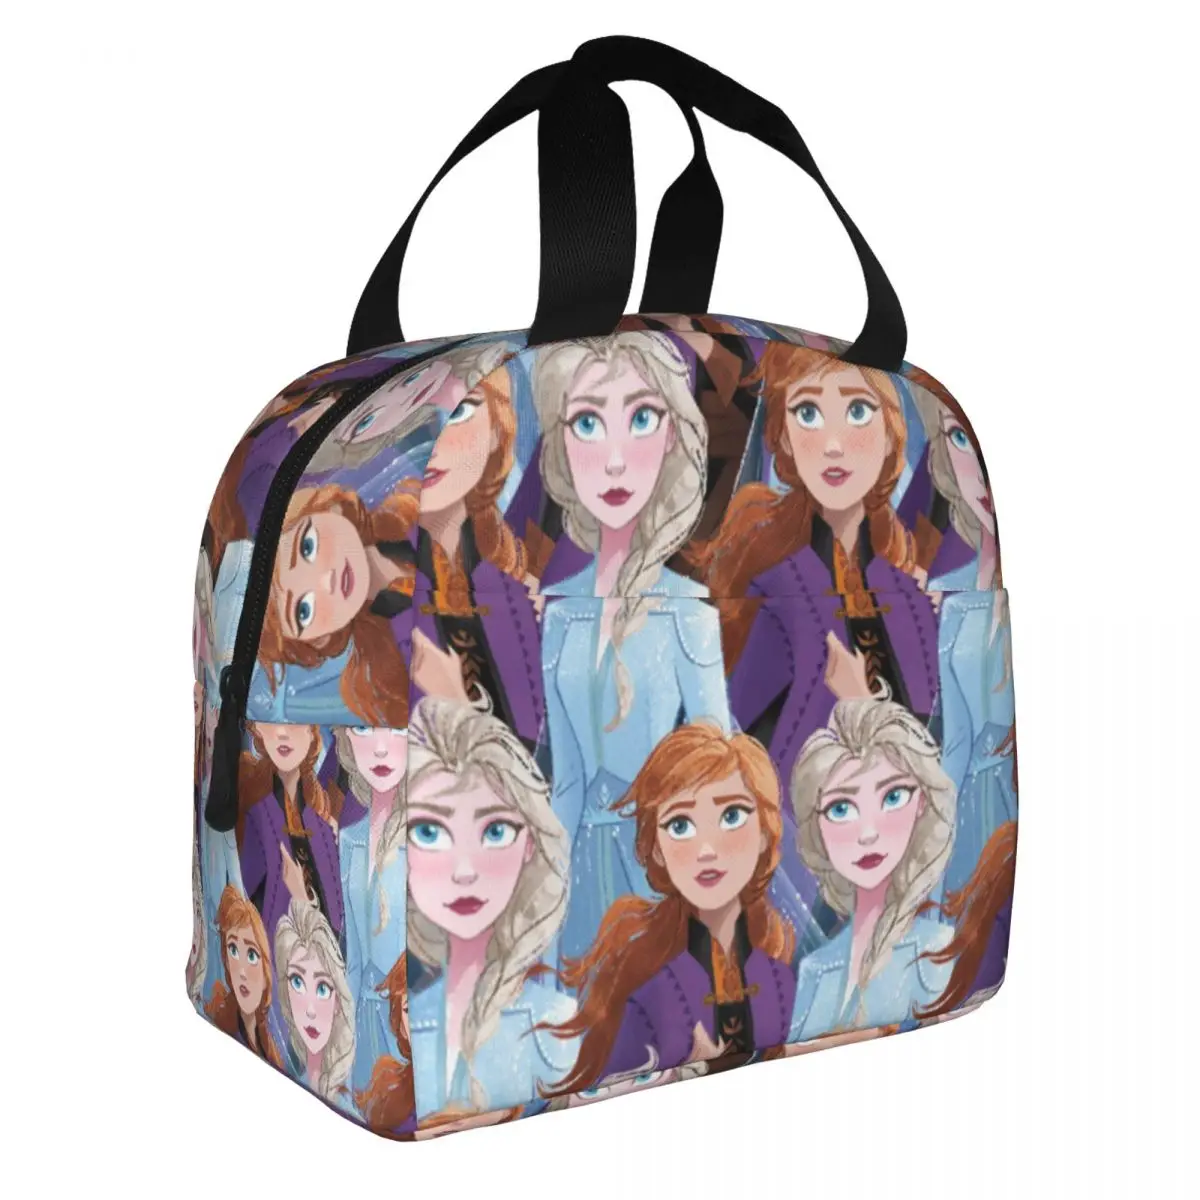 Disney Frozen Elsa Anna Изолированные сумки для ланча большой емкости Многоразовая сумка-холодильник Ланч-бокс Тотализатор Офис Путешествия Мужчины Женщины . ' - ' . 1